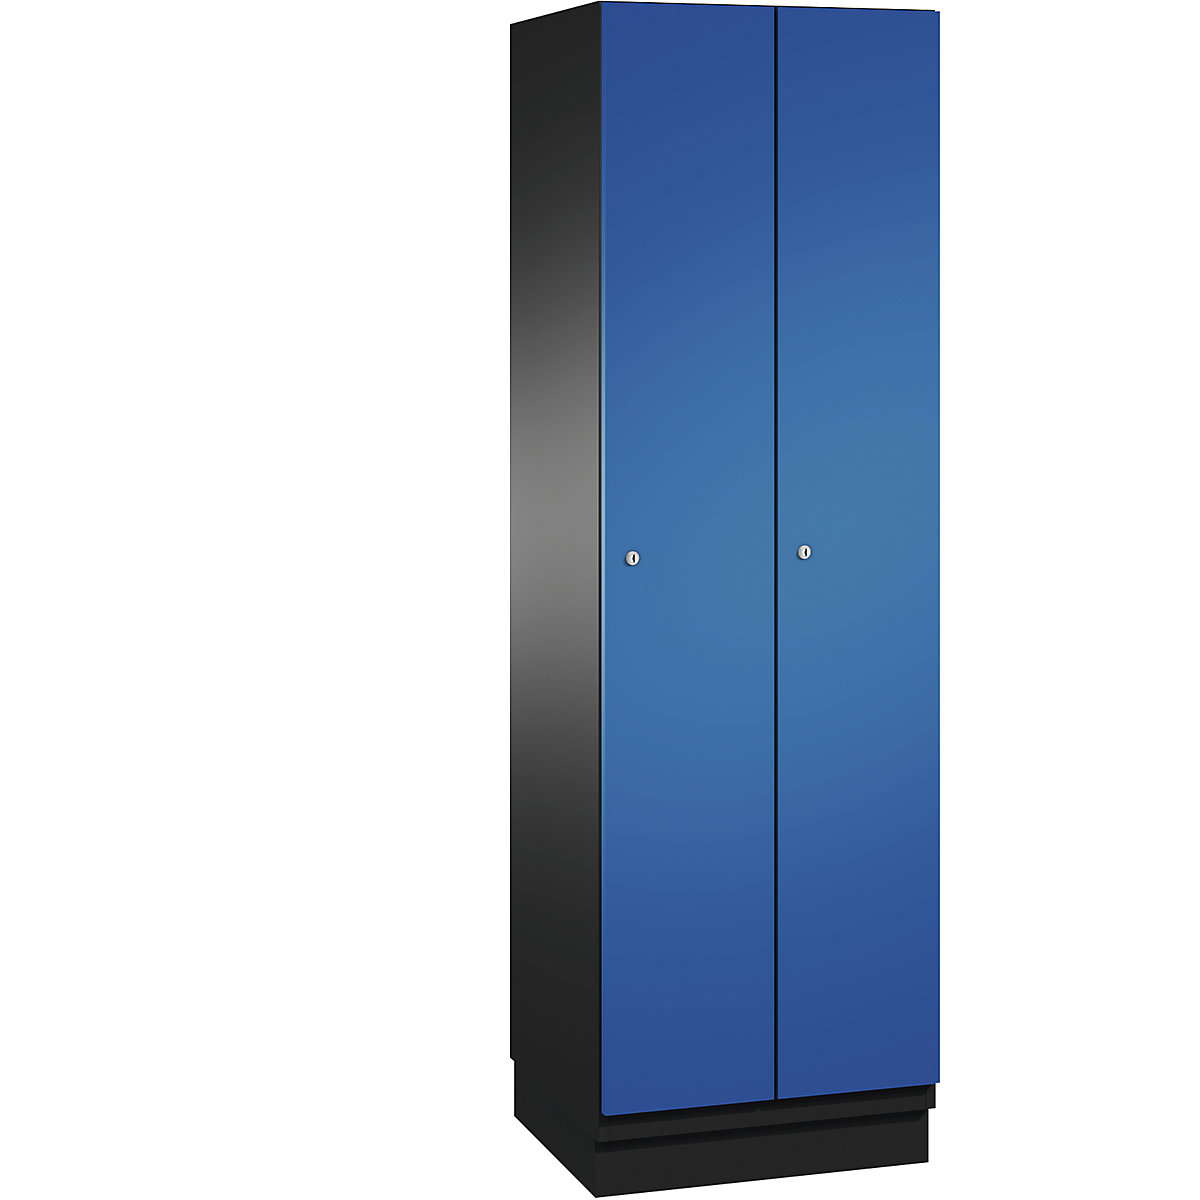 CAMBIO cloakroom locker with sheet steel doors – C+P, 2 compartments, 600 mm wide, body black grey / door gentian blue-9